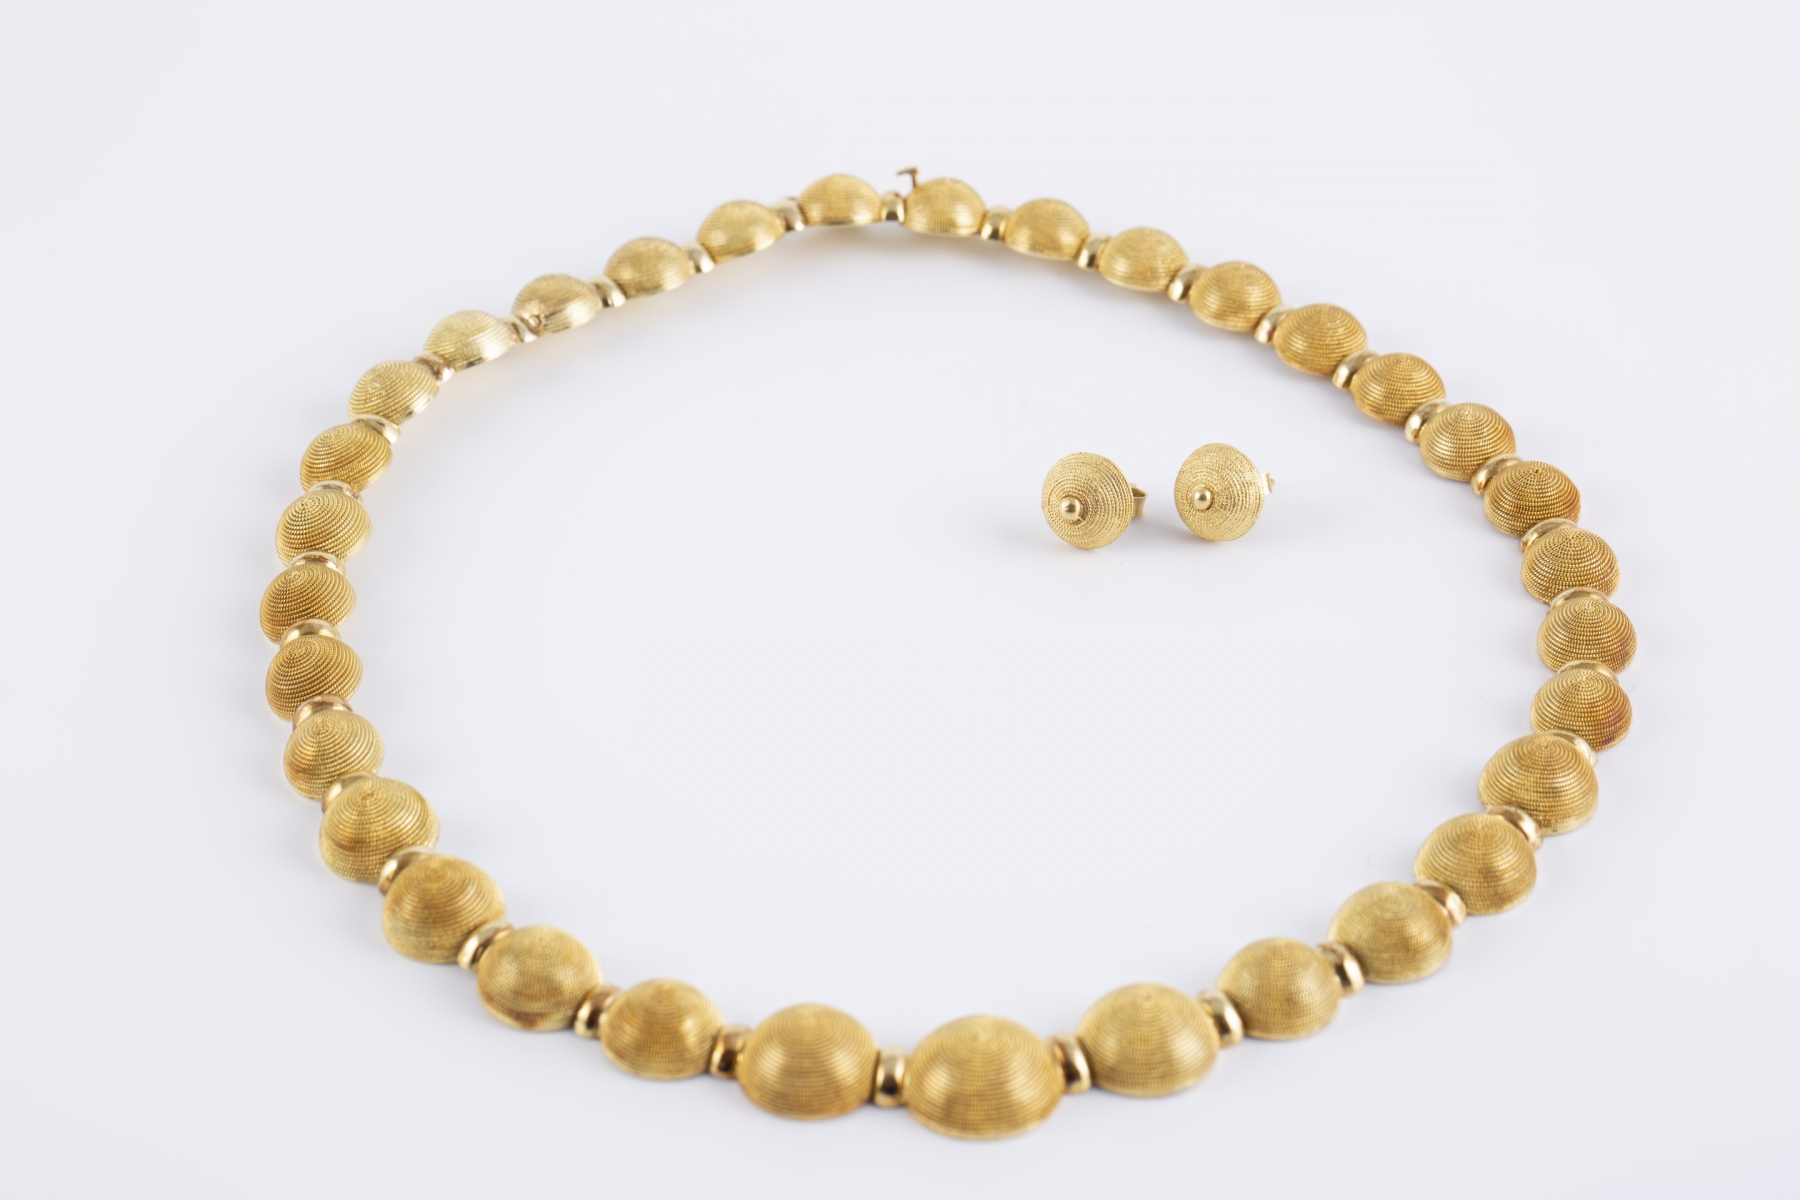 50 - Parure en or jaune comprenant un collier ras de cou et une paire de boucles d'oreilles assorties. Adjugé 3750€